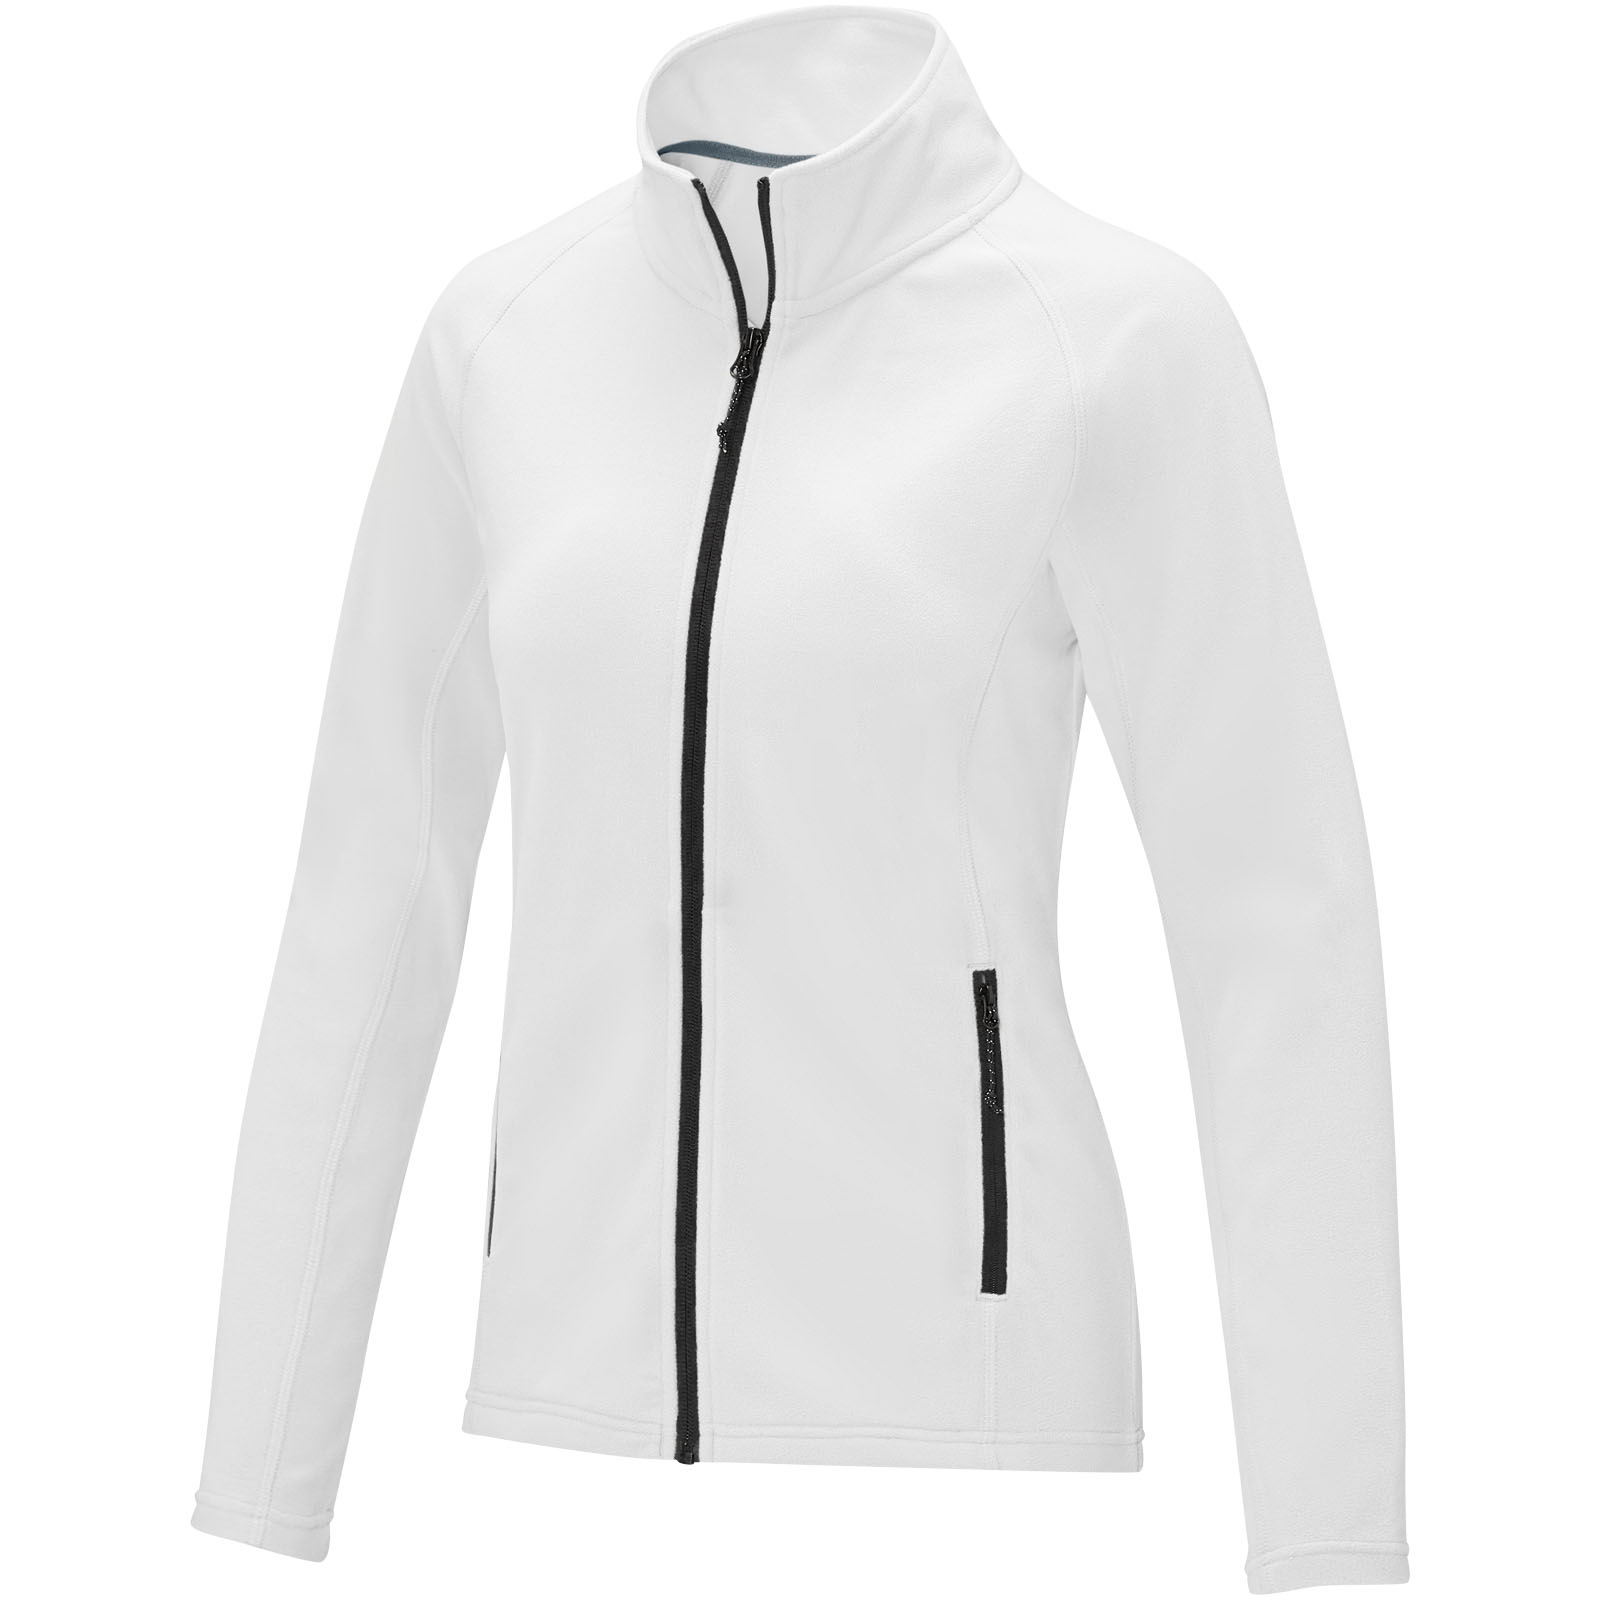 Clothing - Zelus women's fleece jacket